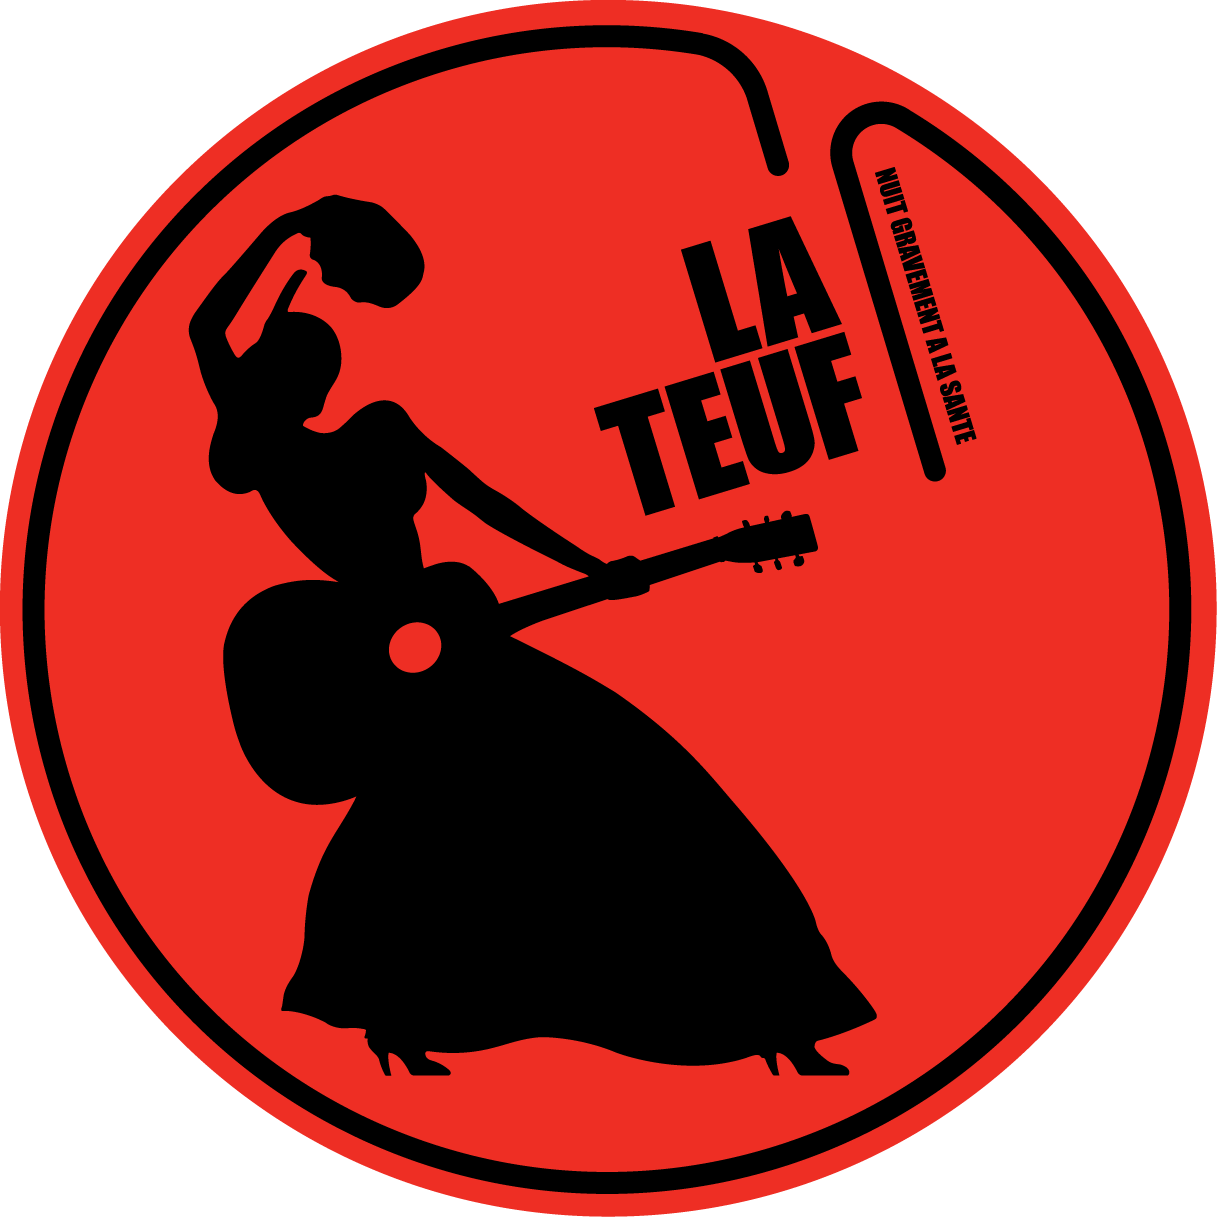 Association La Teuf - membre itopie informatique